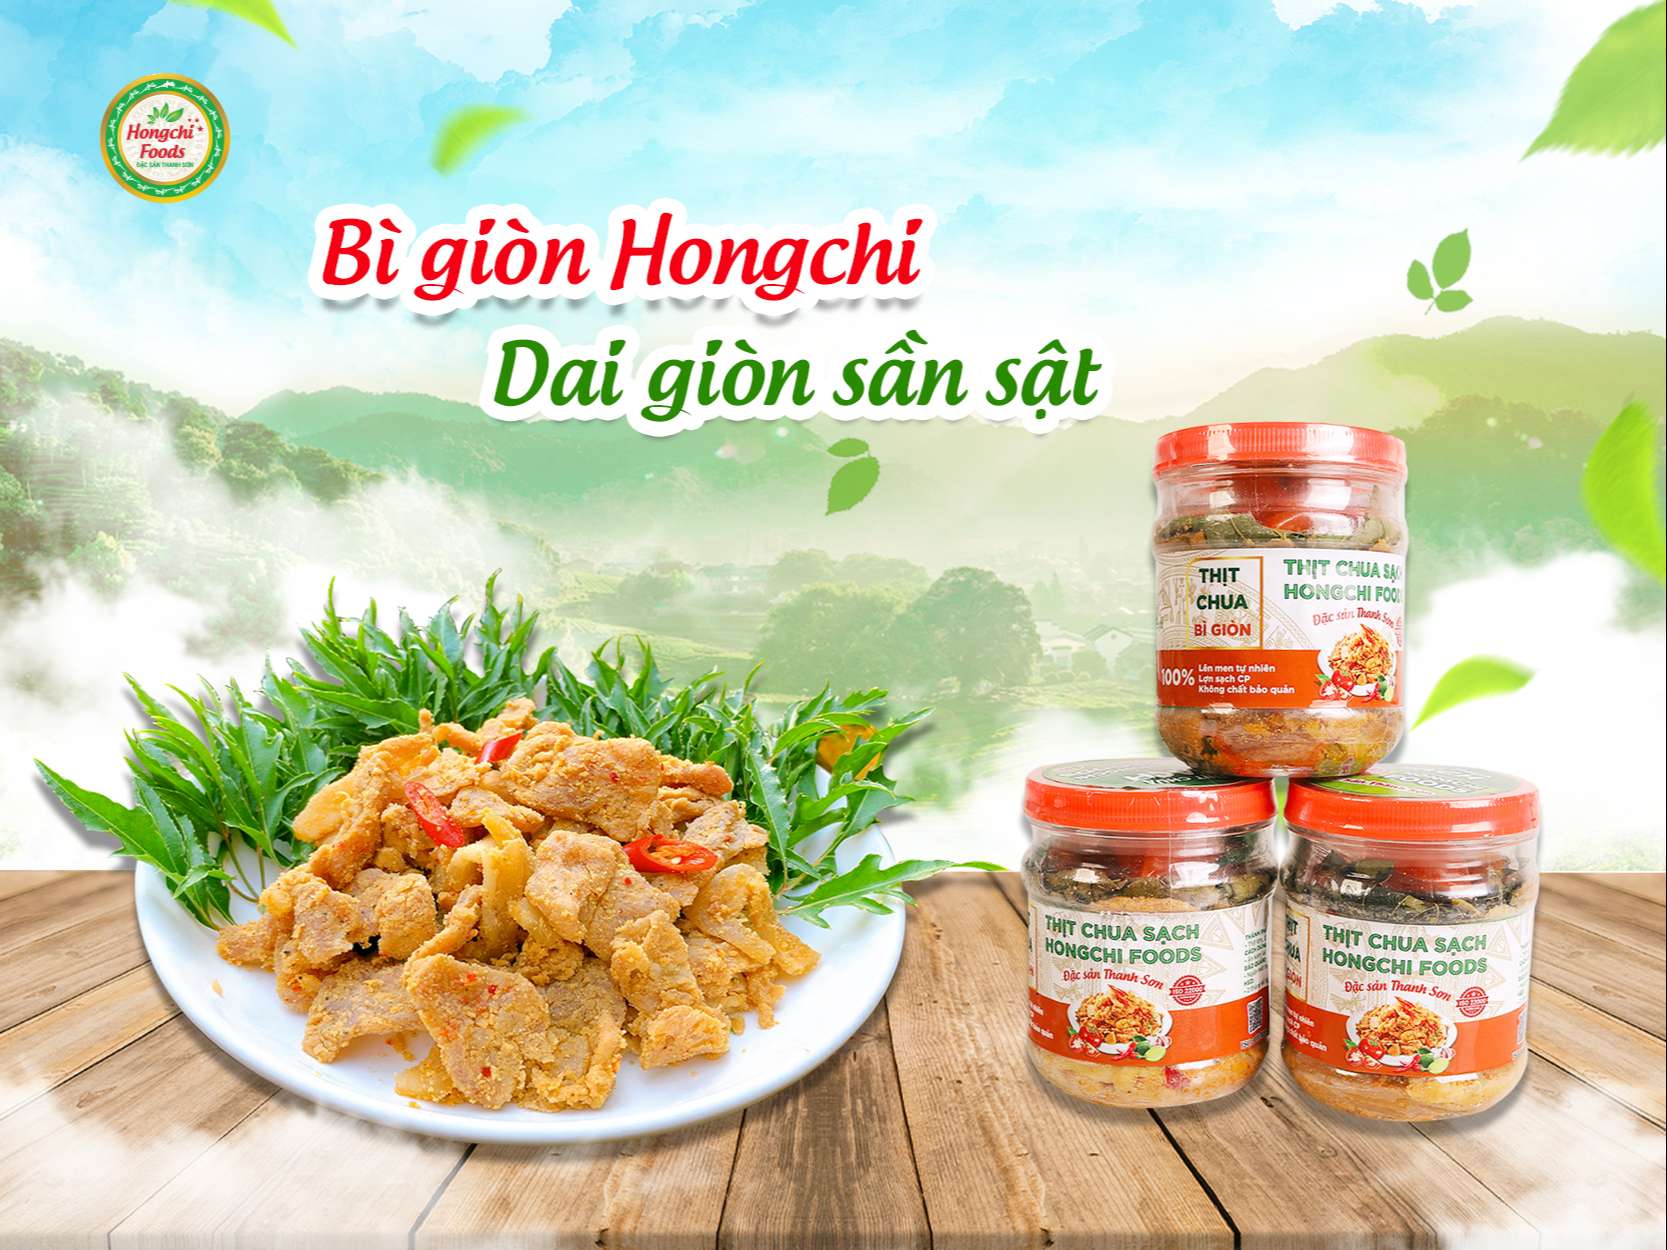 Bì giòn Hongchi Foods